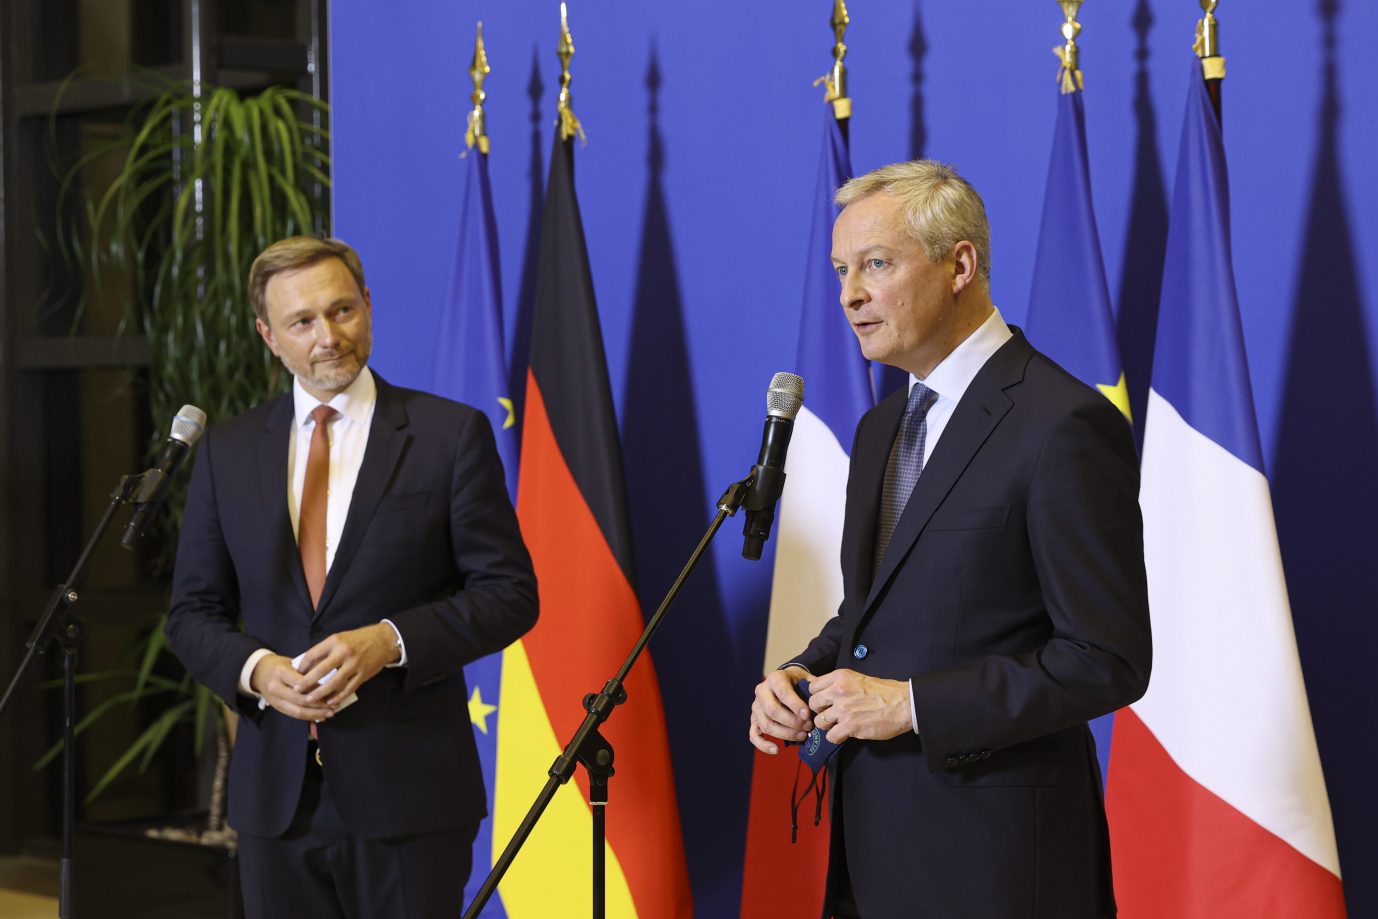 Deutschlands Finanzminister Christian Lindner (FDP) mit seinem französischen Amtskollegen Bruno Le Maire (En Marche)